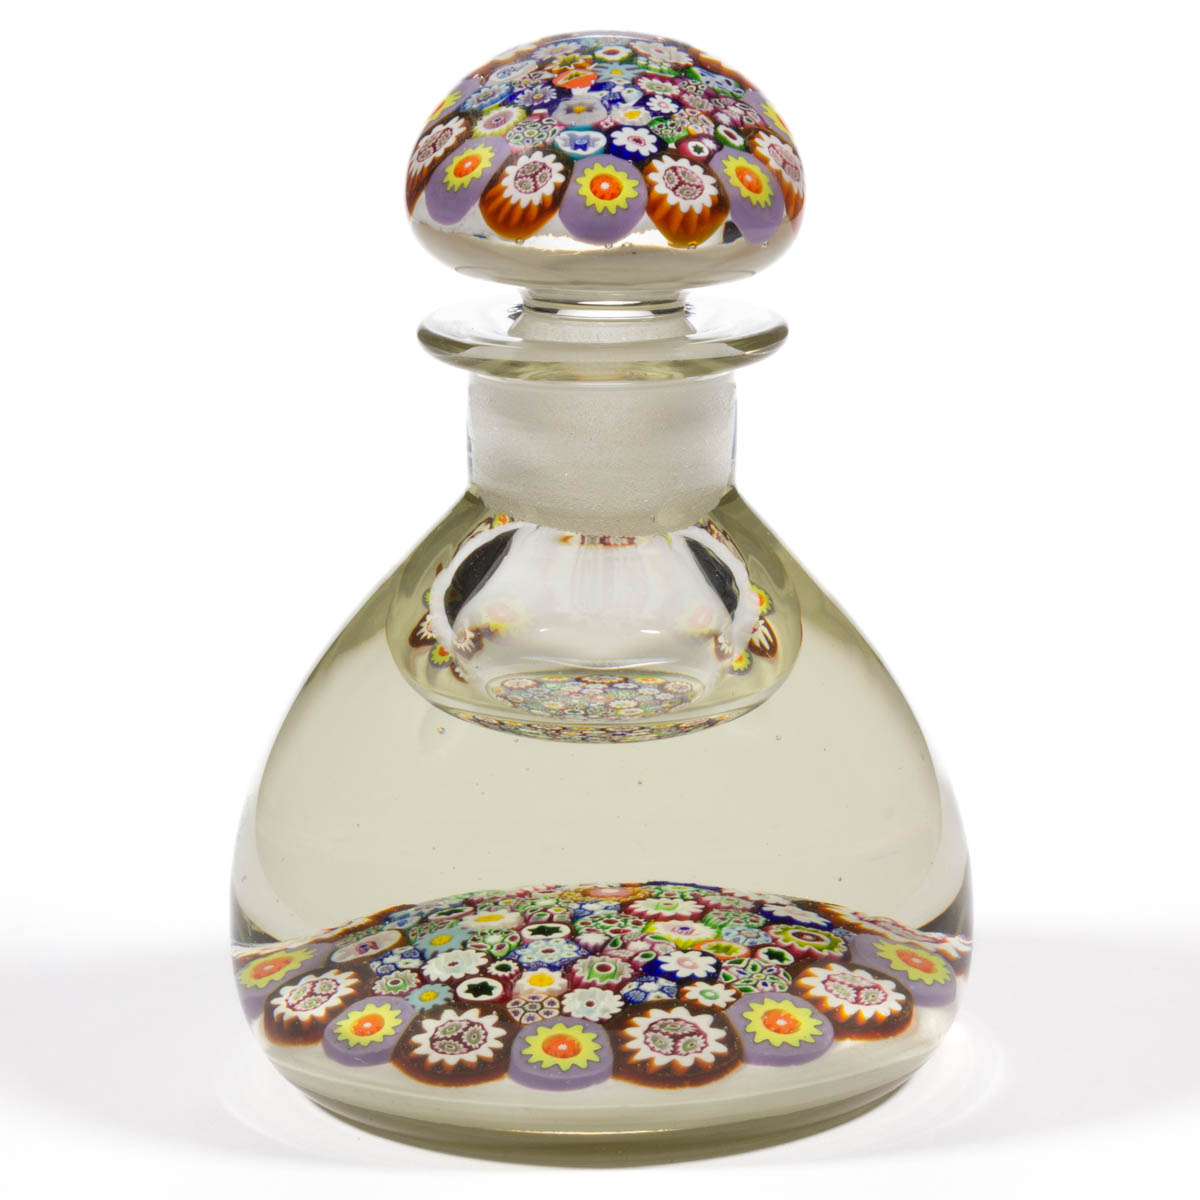 PAUL YSART (SCOTTISH, 1904-1979) ATTRIBUTED CLOSE-PACK MILLEFIORI ART GLASS PAPERWEIGHT INKWELL